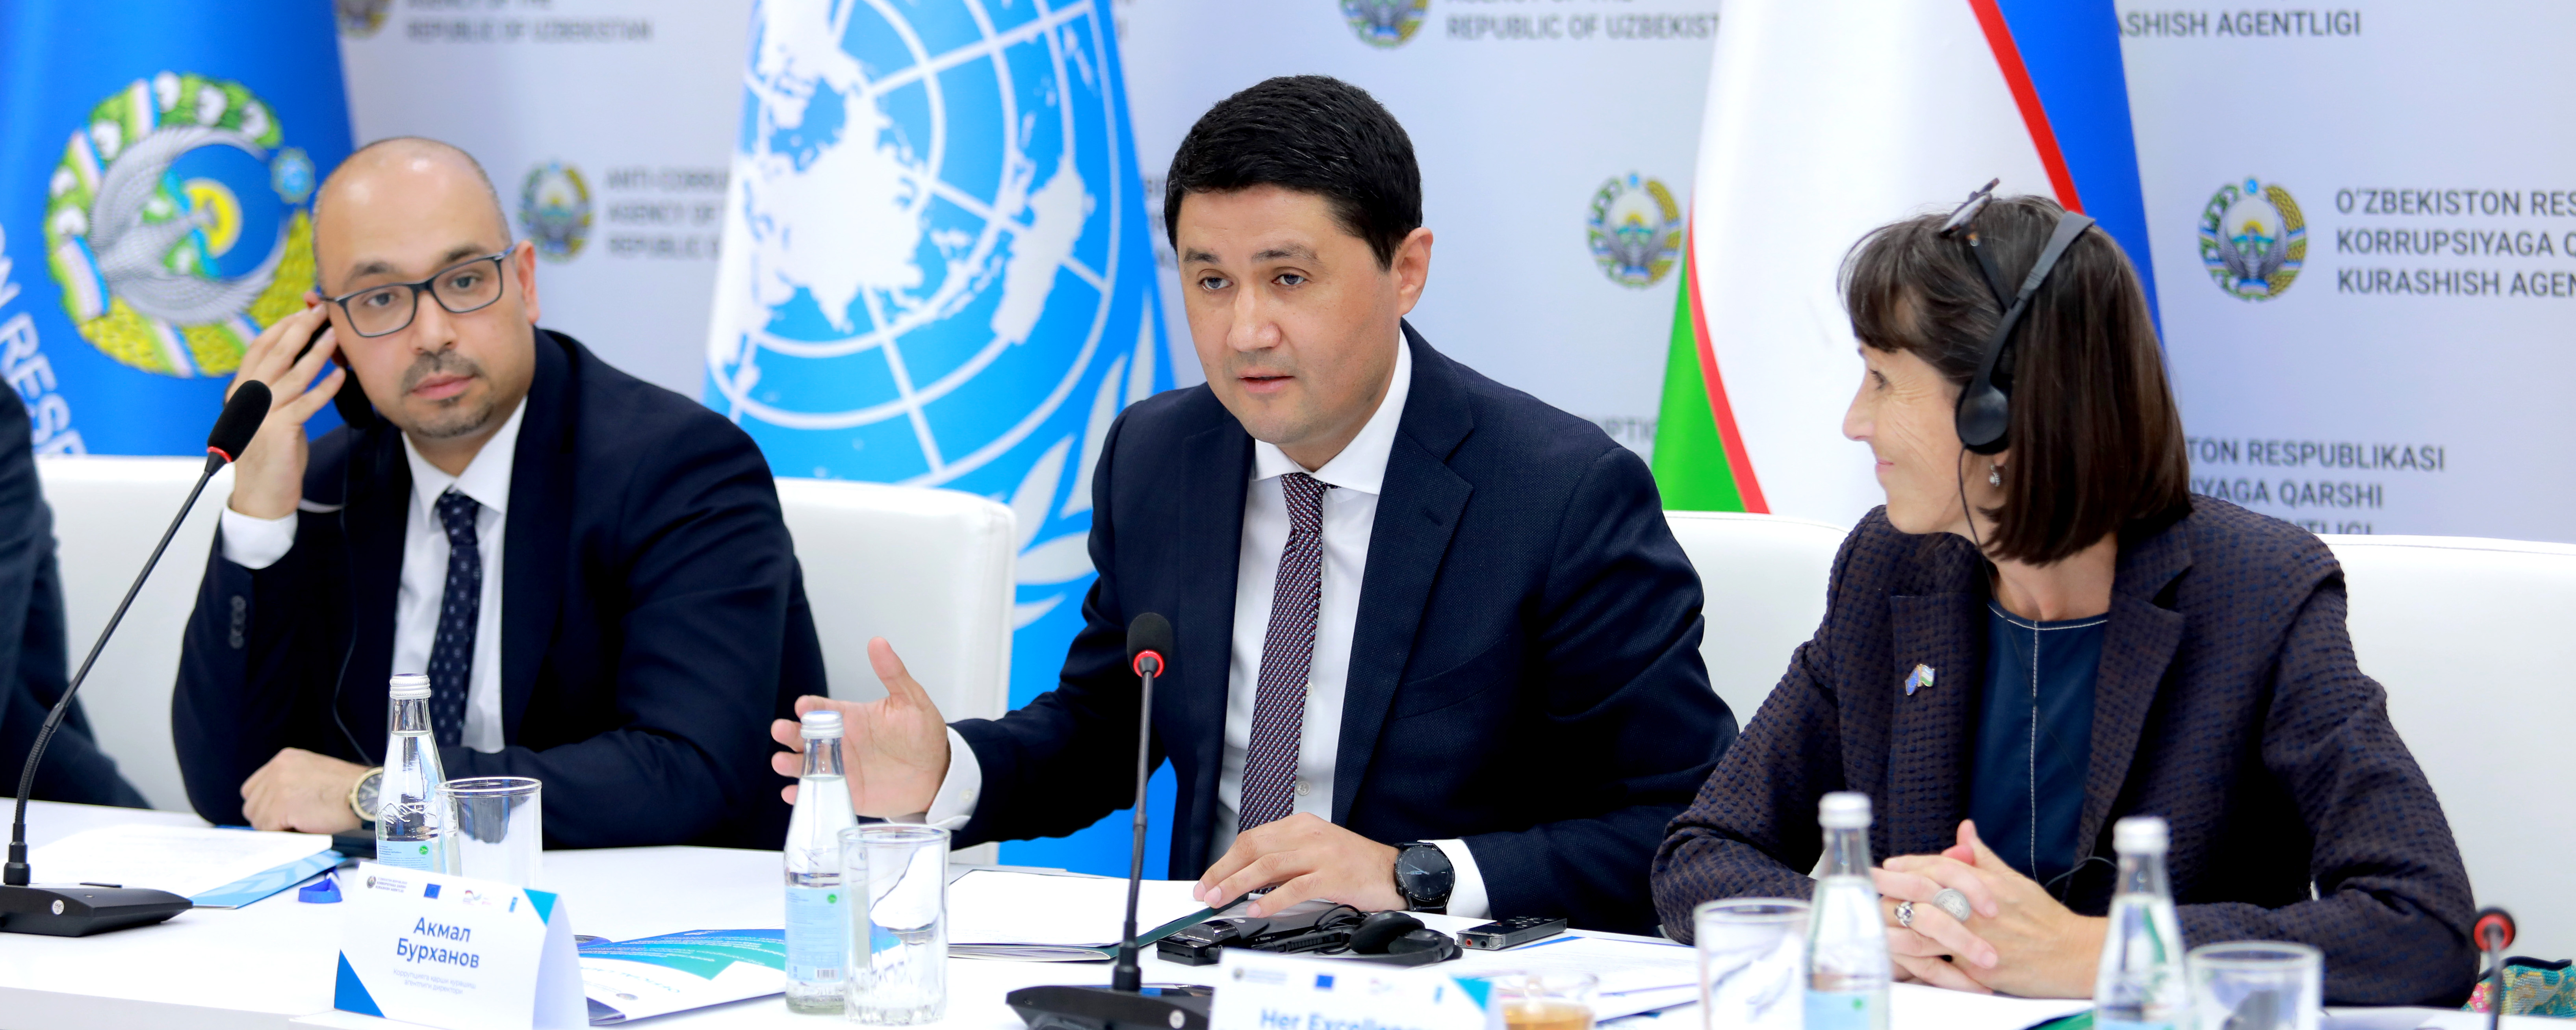 Будет реализован проект «Совершенствование управления в Узбекистане»